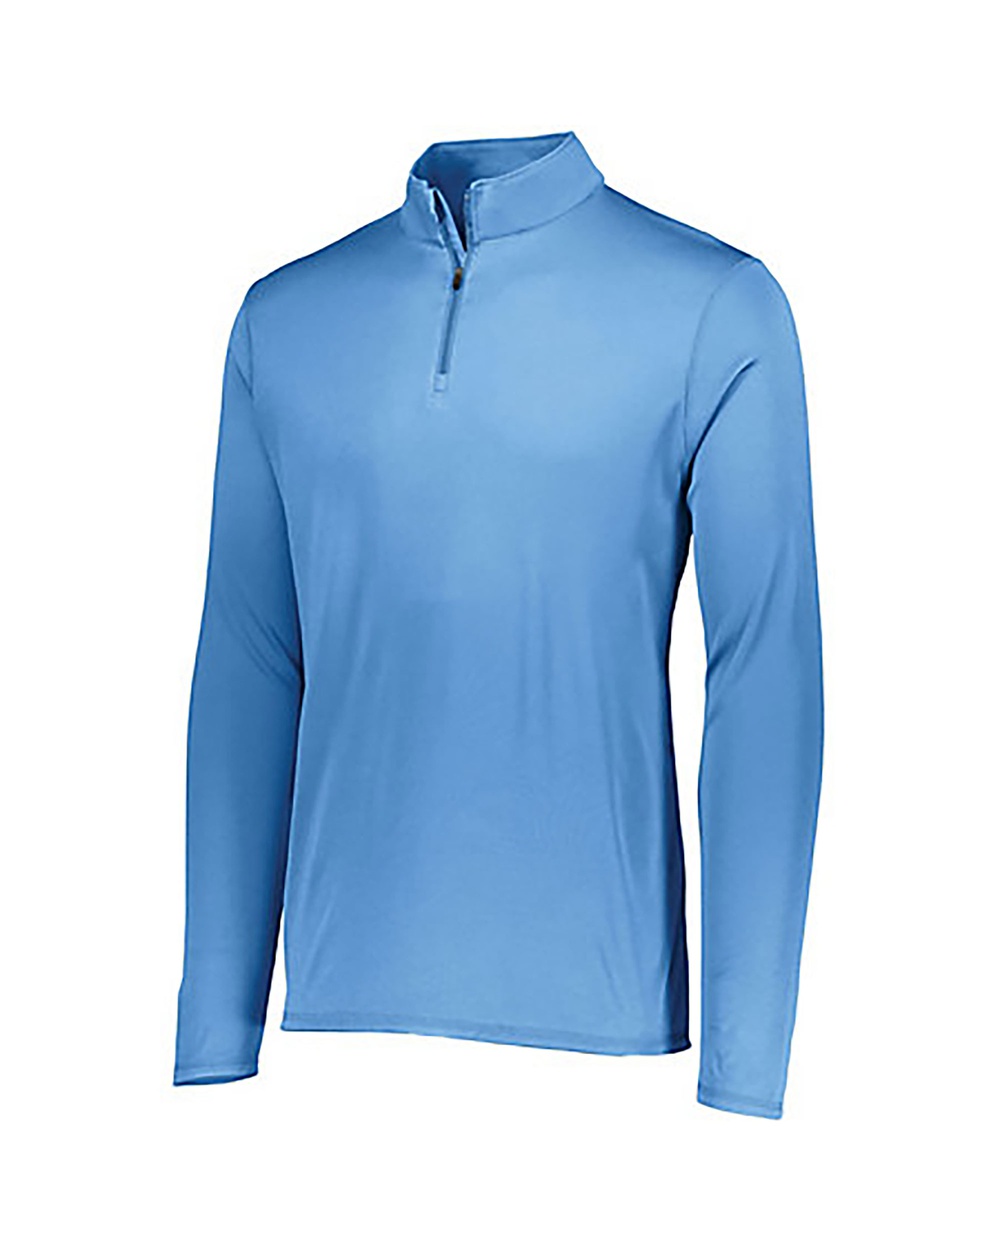 Augusta Sportswear® 2785 Attain 1/4 Zip Pullover - One Stop